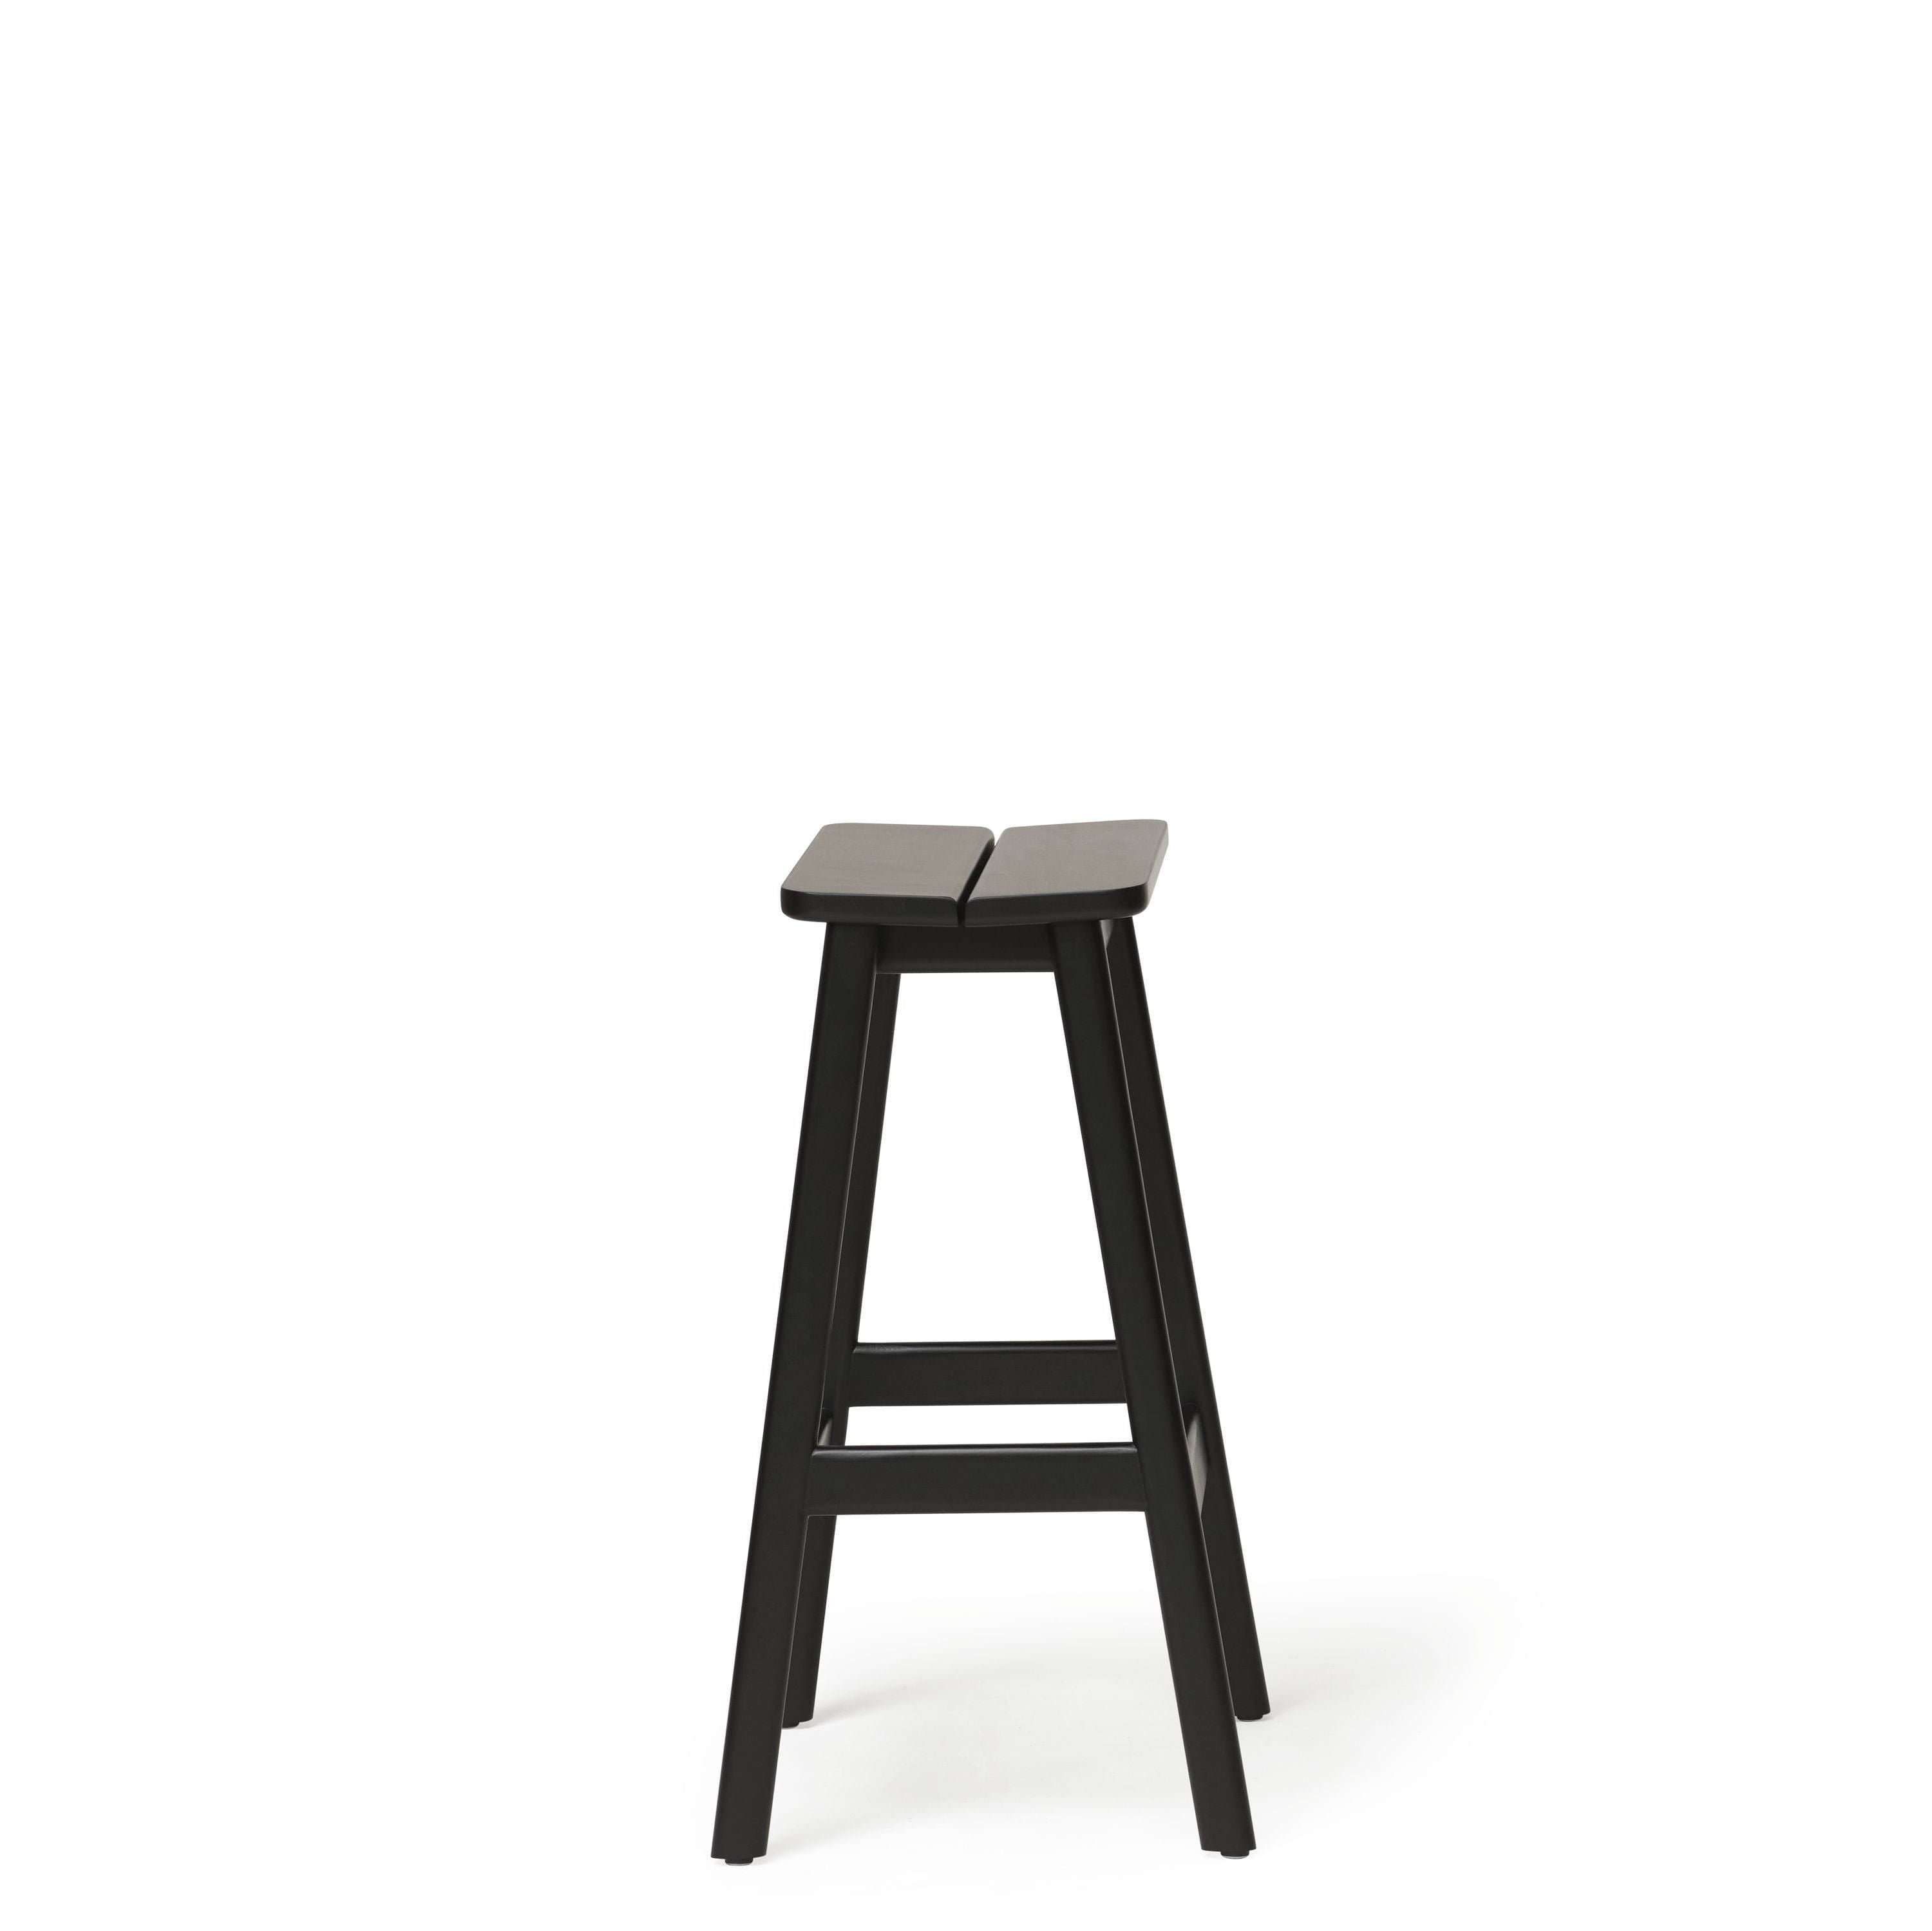 Form & Refine Úhel standardní stoličky 65 cm. Černý obarvený buk